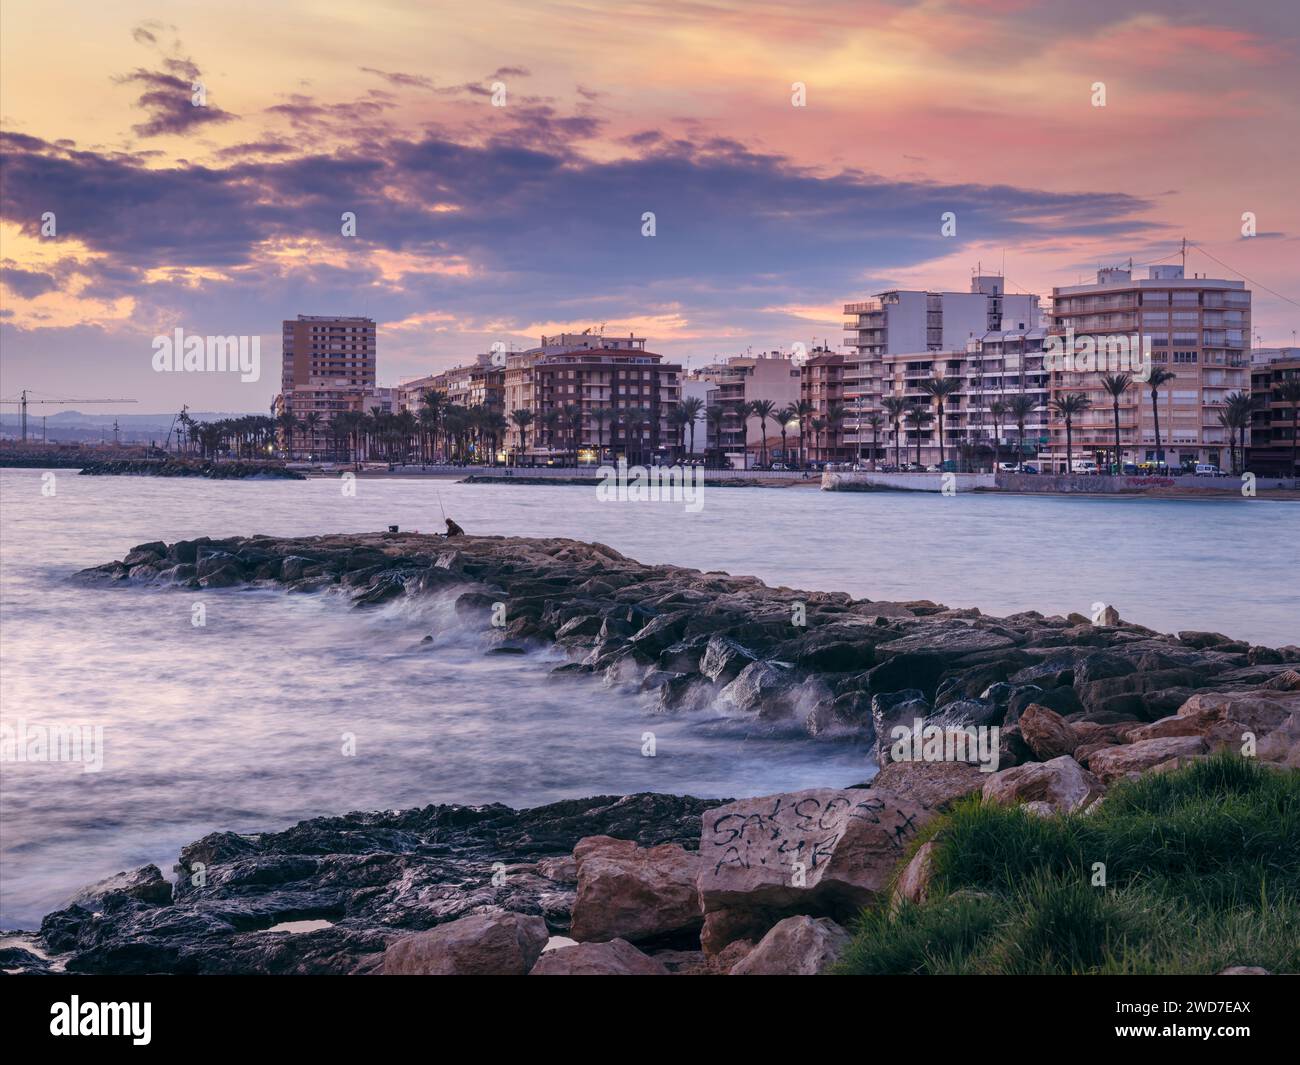 Torrevieja, Alicante, Espagne. Derrière un pêcheur solitaire sur le brise-lames, les lumières de la ville de Torrevieja clignotent alors que le soleil se couche sur la Méditerranée Banque D'Images